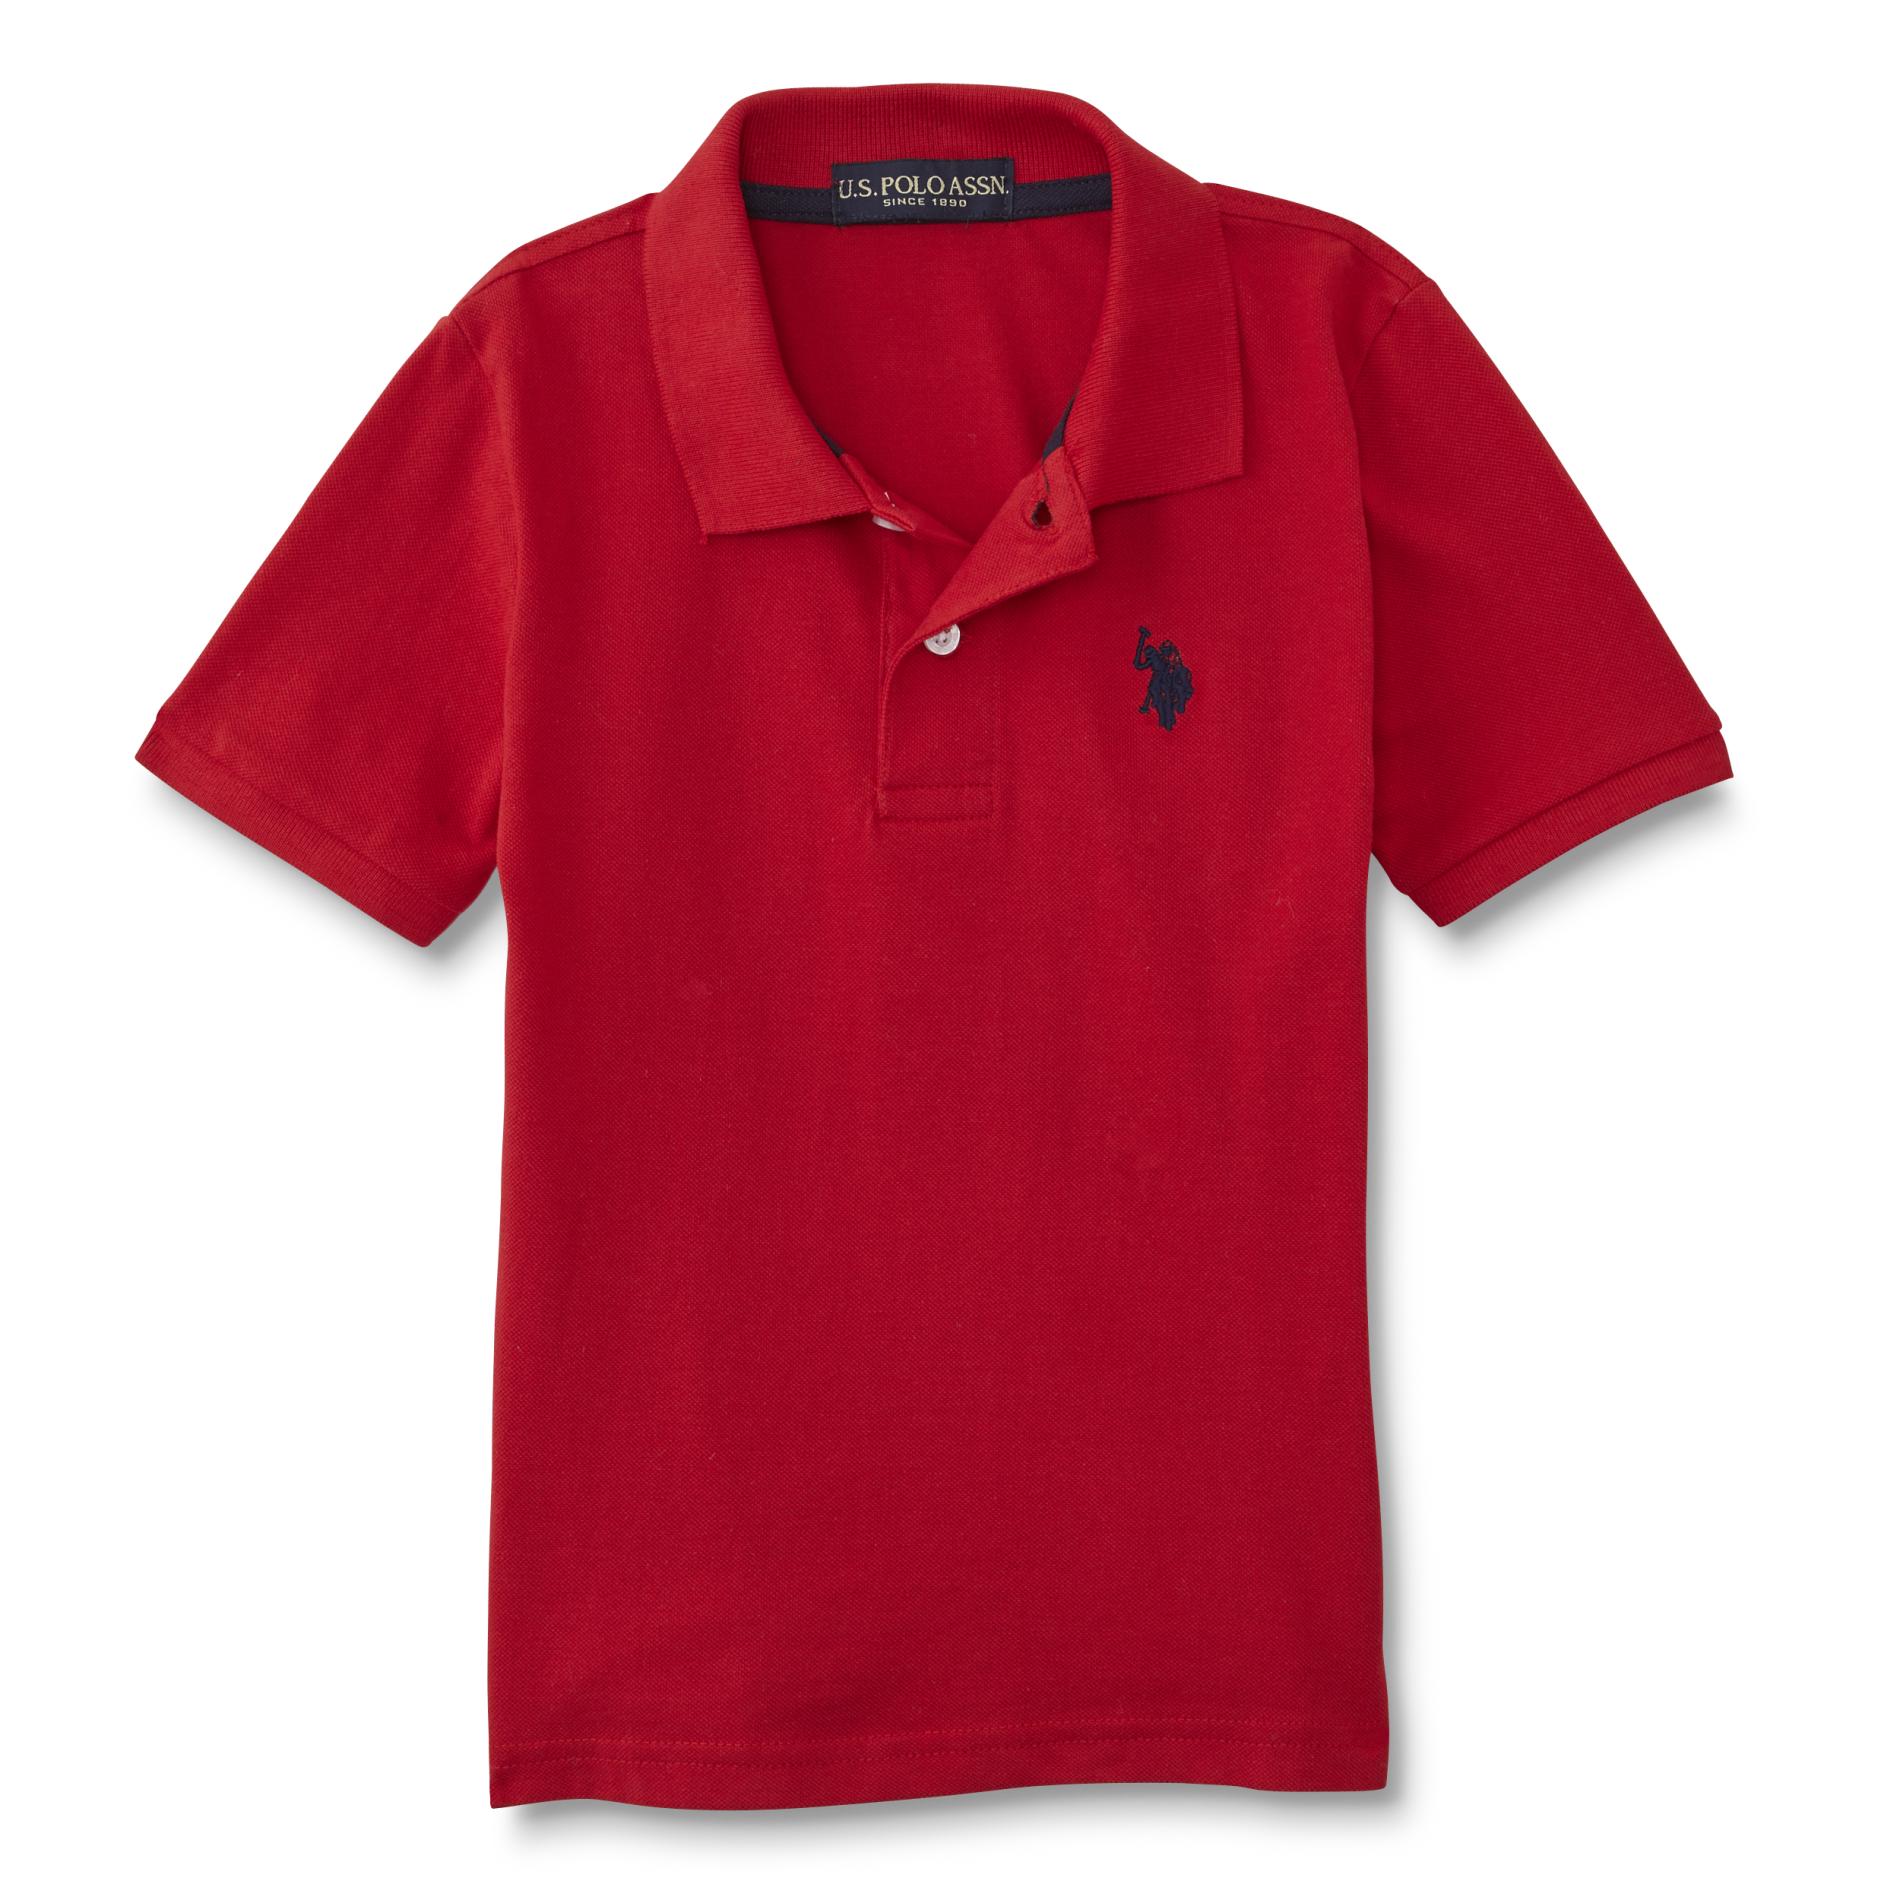 U.S. Polo Assn. Boy's Polo Shirt